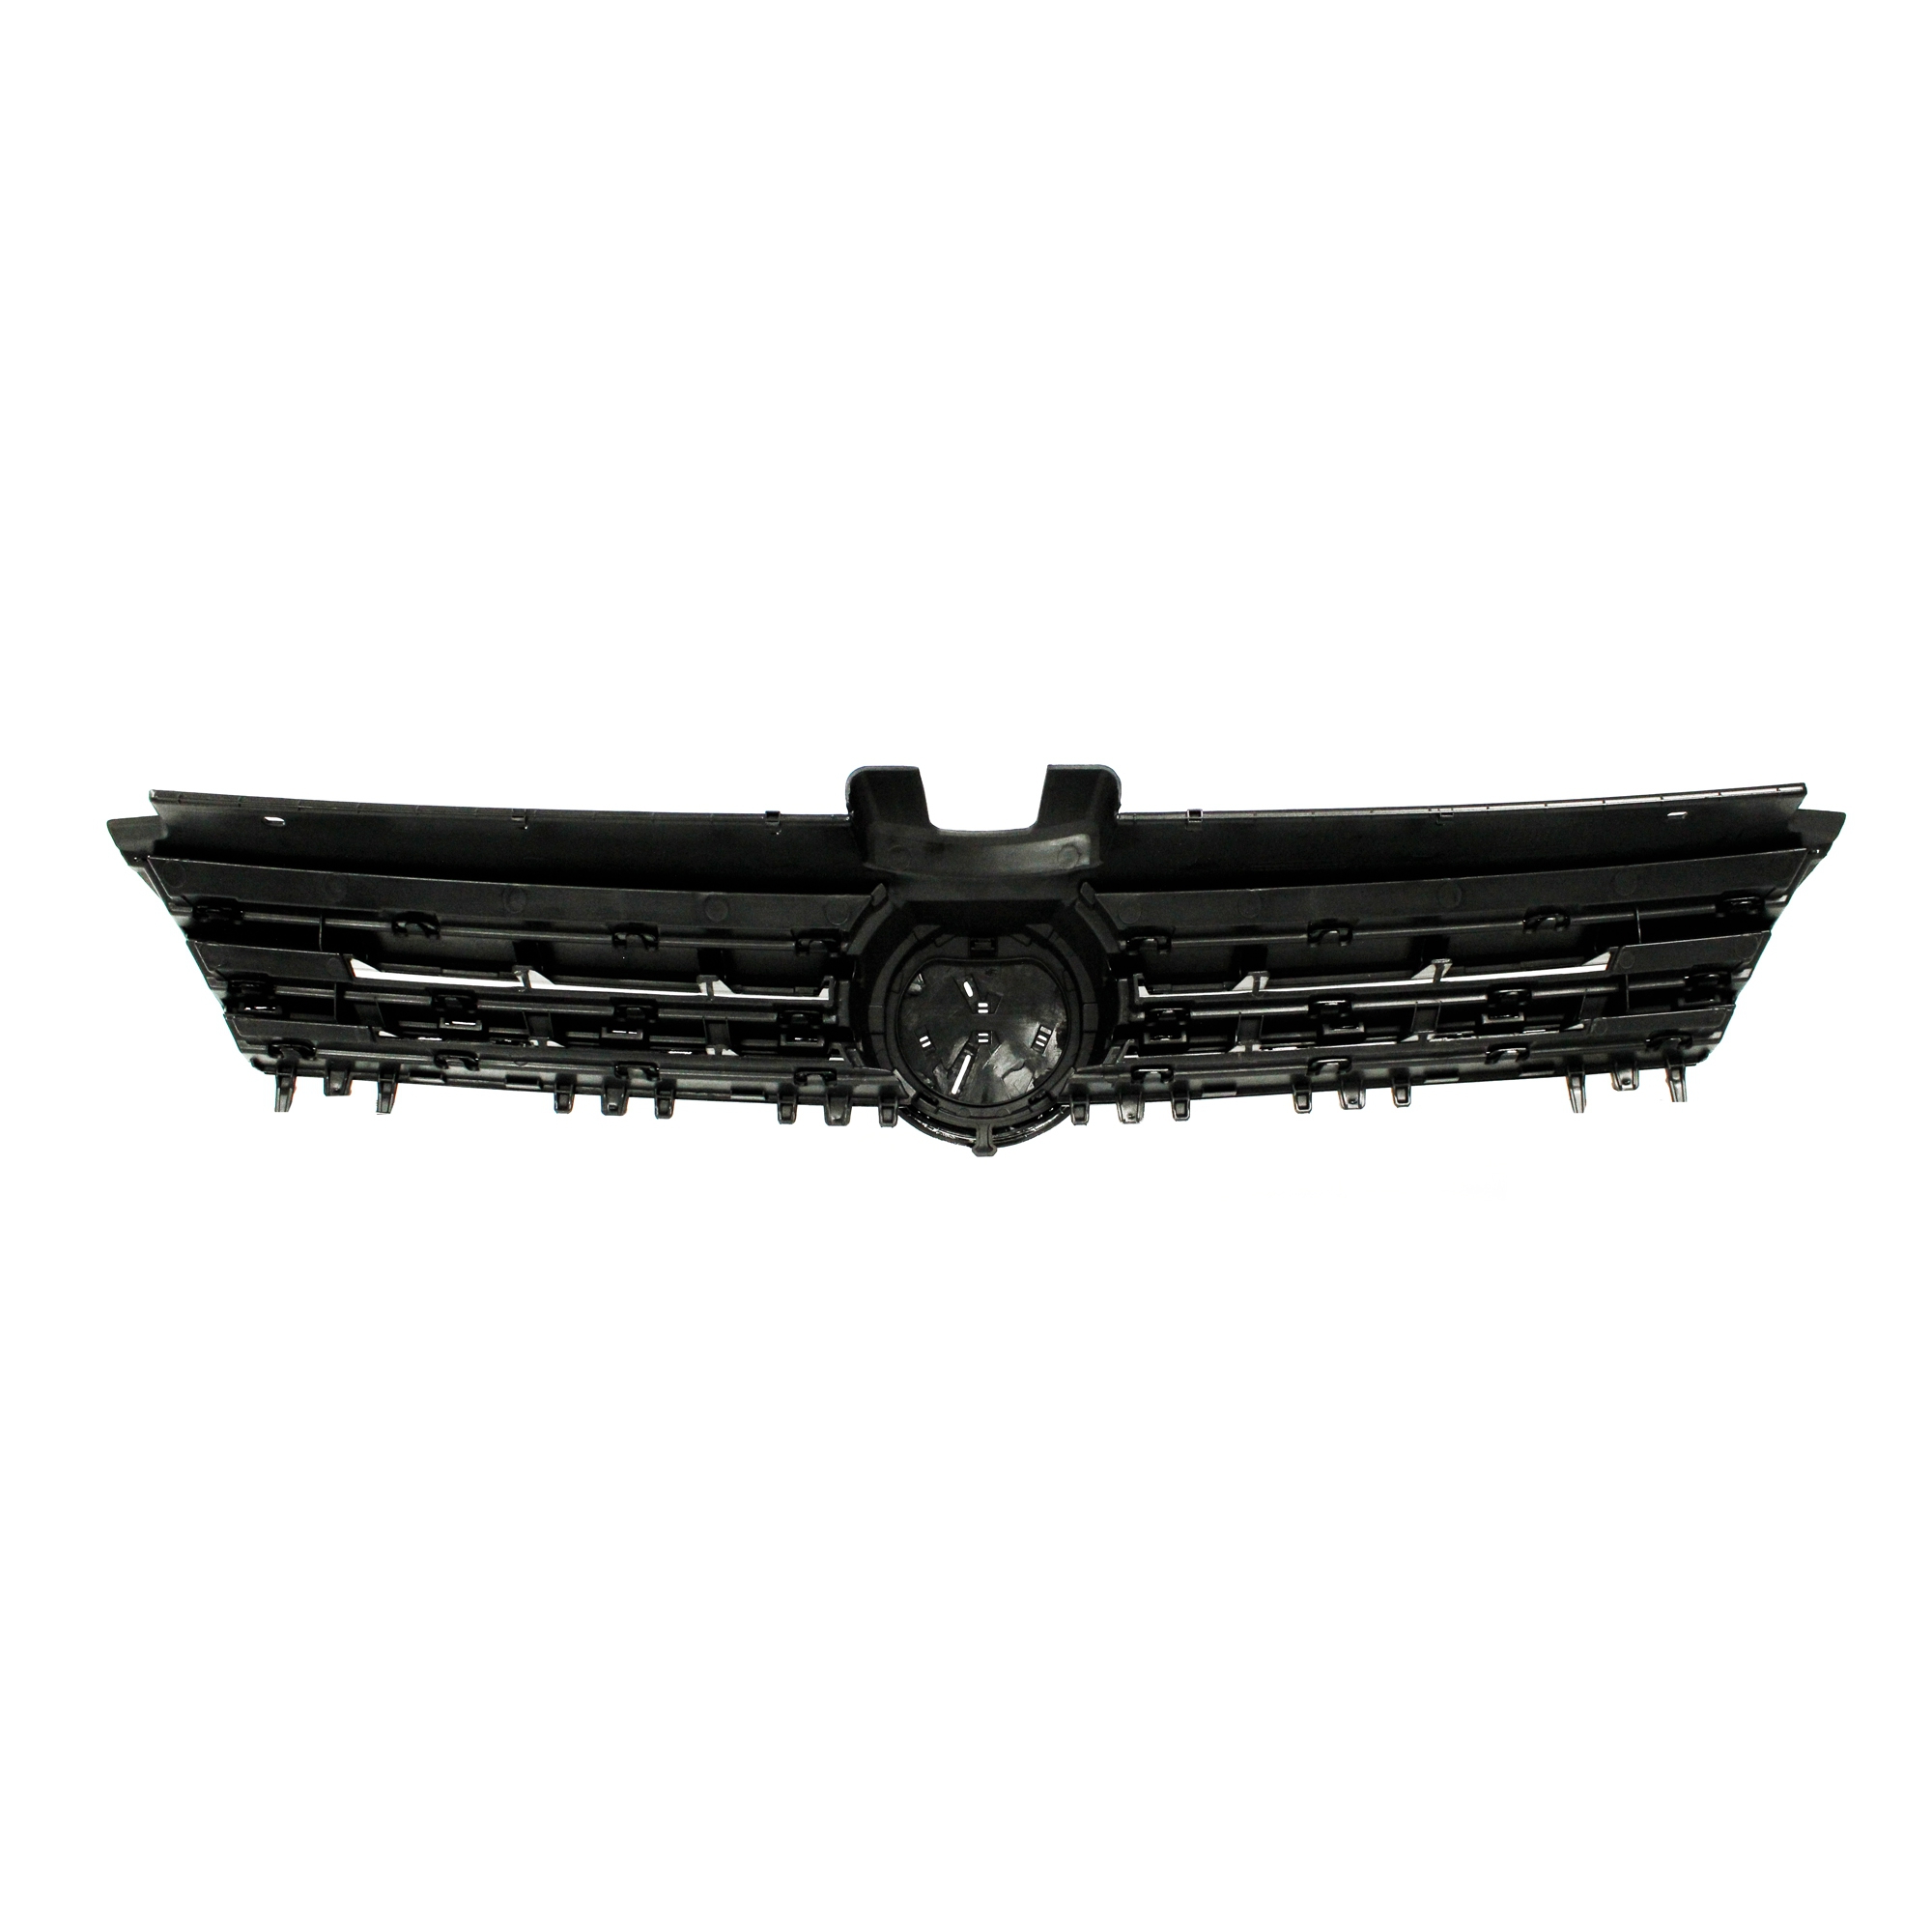 Kühlergrill Kühlergitter für Golf 7 schwarz glanz mit Chromleiste R Look  mit Aussparung für das Emblem